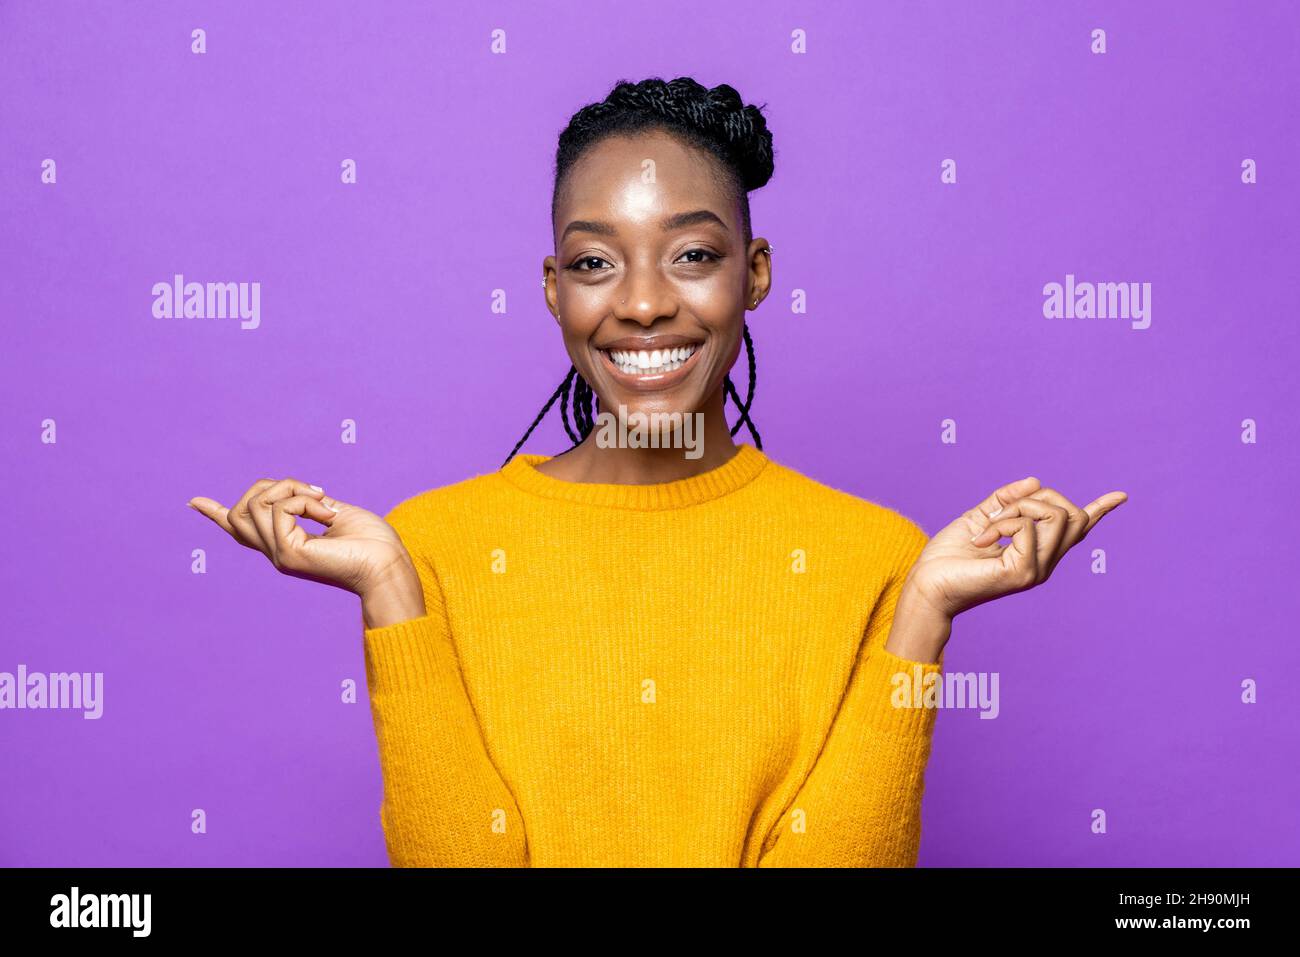 Porträt einer lächelnden jungen afroamerikanischen Frau, die in einem isolierten, violetten Studiohintergrund die Hände zur Seite zeigt Stockfoto